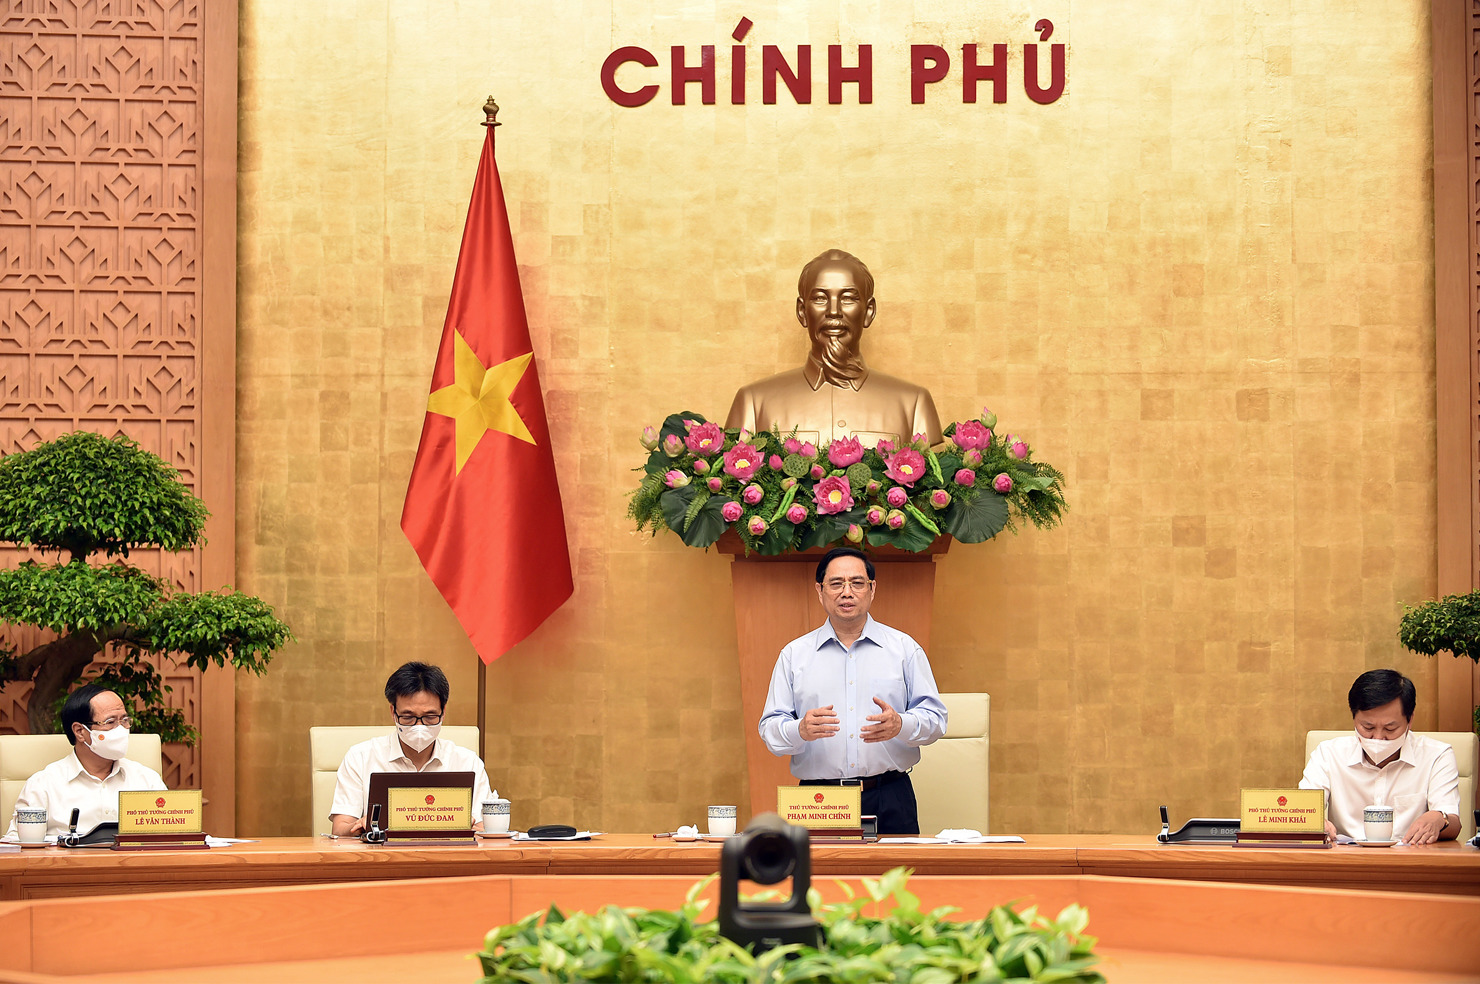 Thủ tướng Phạm Minh Chính chủ trì Hội nghị trực tuyến 63 tỉnh, thành phố thực hiện các giải pháp cấp bách phòng, chống dịch COVID-19 theo Nghị quyết kỳ họp thứ nhất, Quốc hội khóa XV.